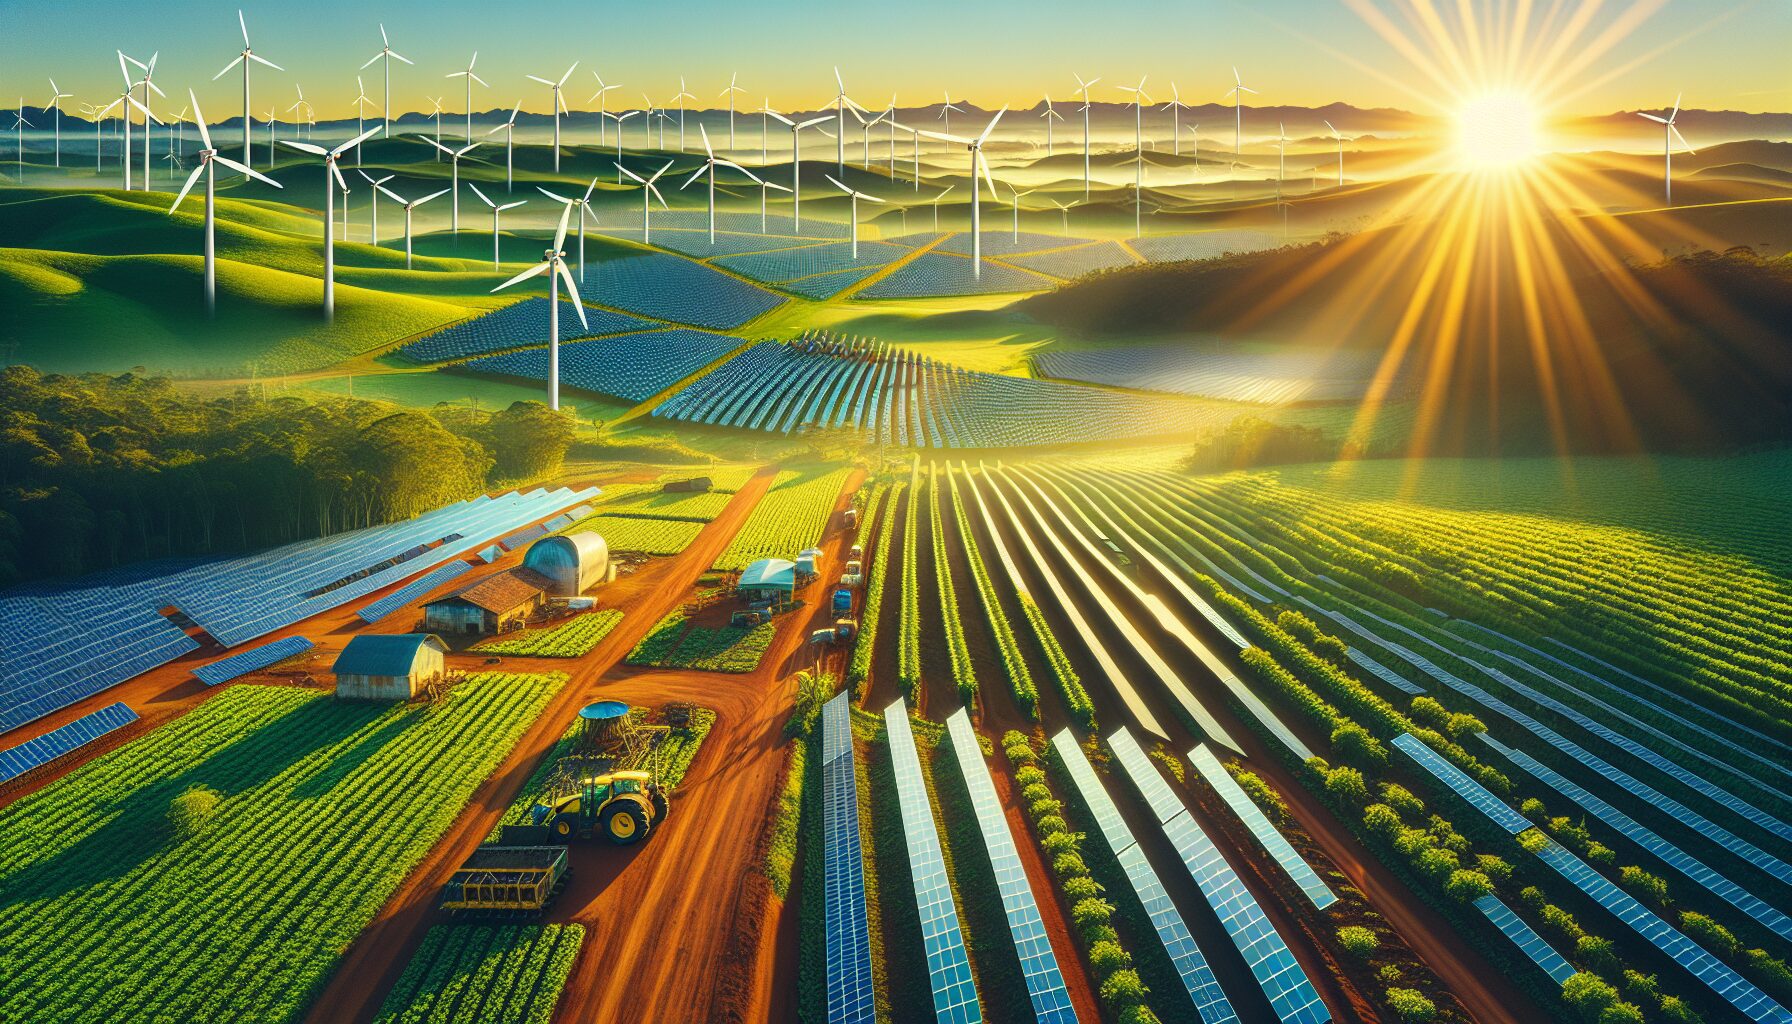 Energia Solar transformando a agricultura Brasileira